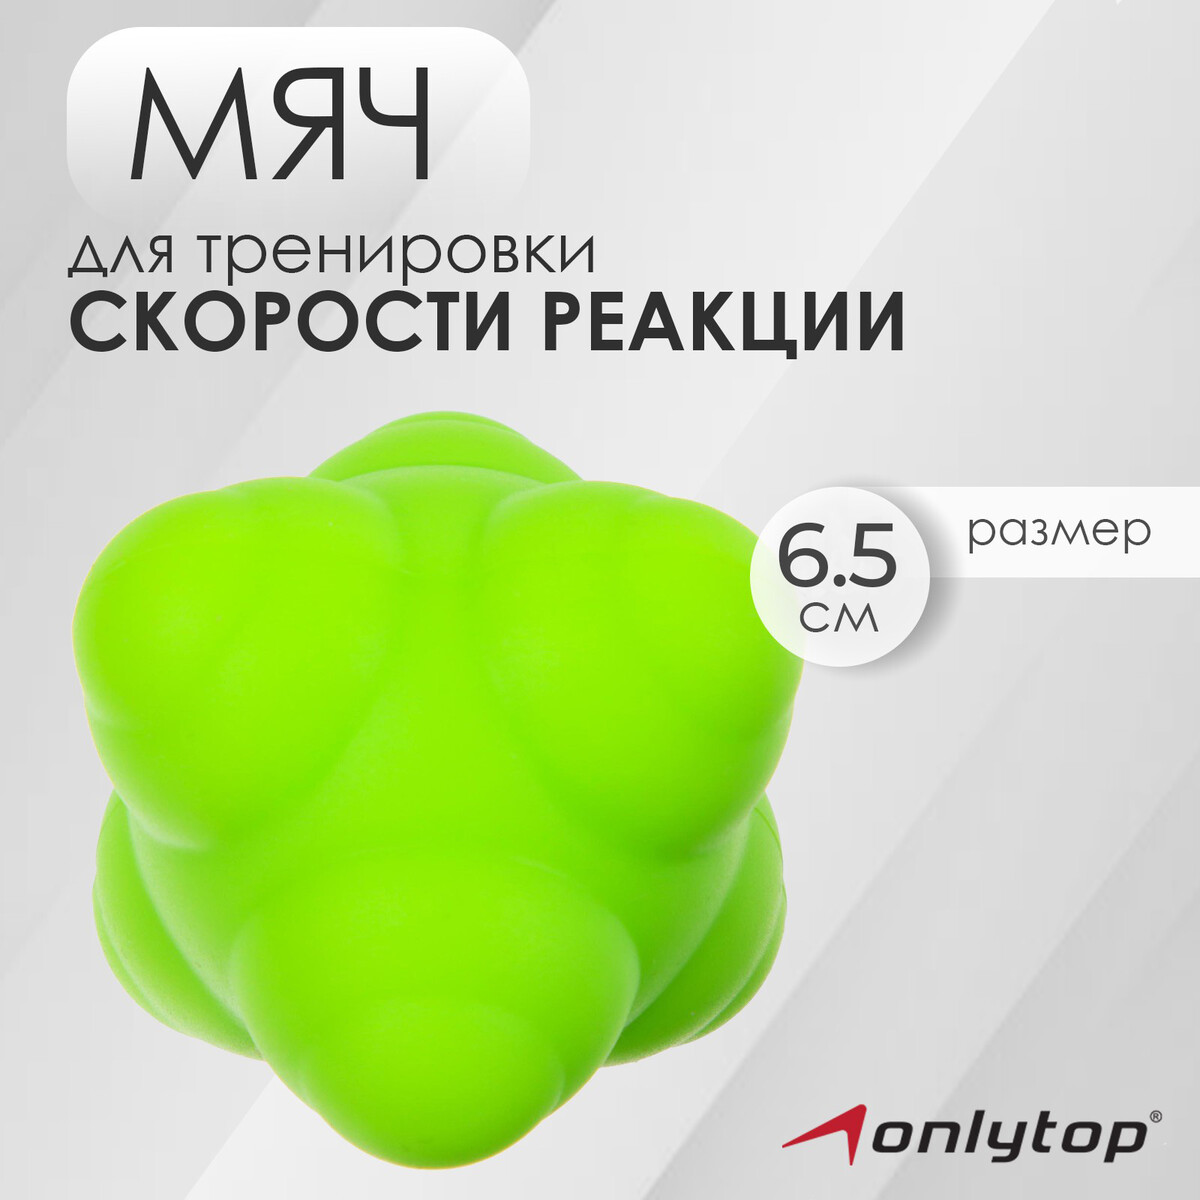 Мяч для тренировки скорости реакции onlytop, цвет зеленый ONLYTOP